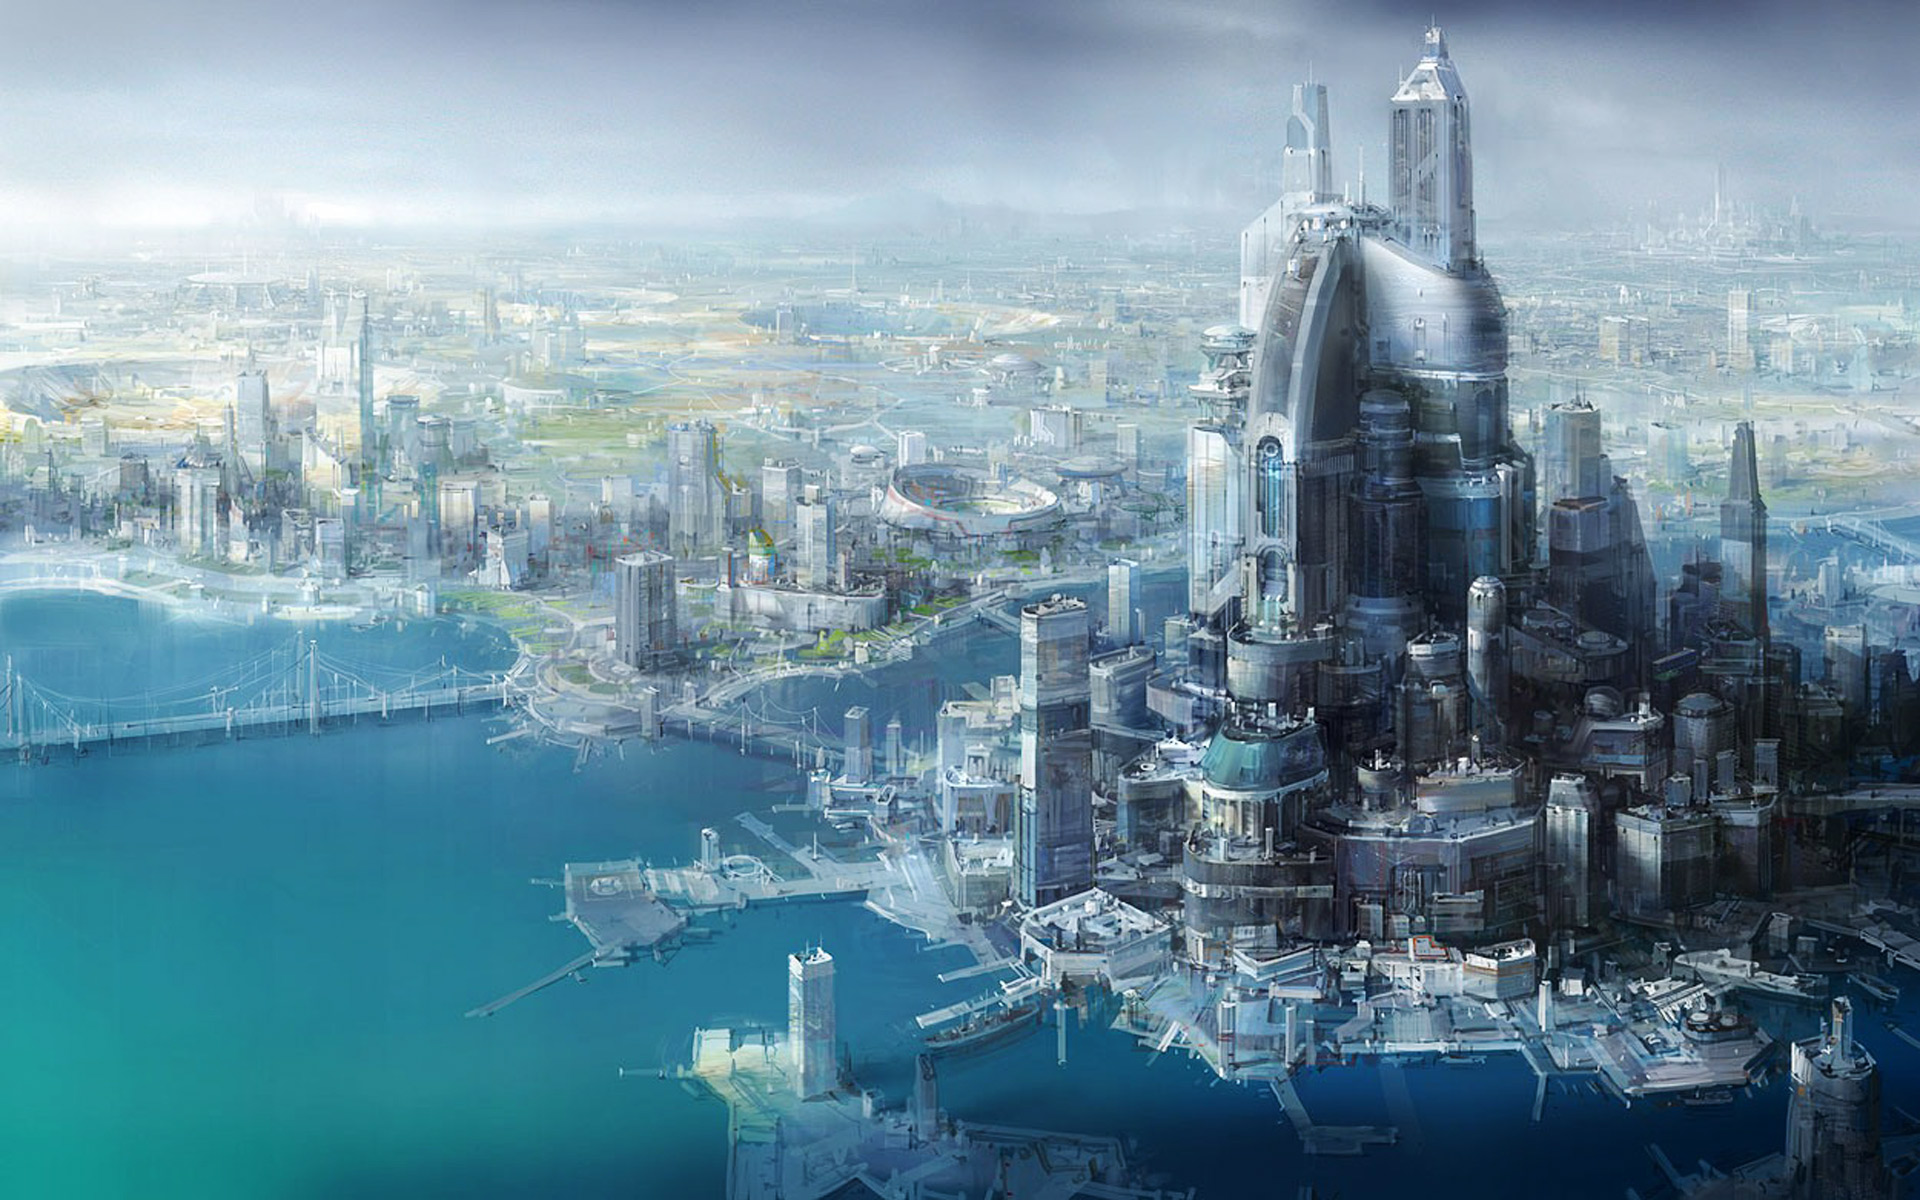 futuristic city, building, futuristic, sci fi, city, blue, cityscape, dock, fantasy, metropolis, ocean, skyscraper, star wars, water